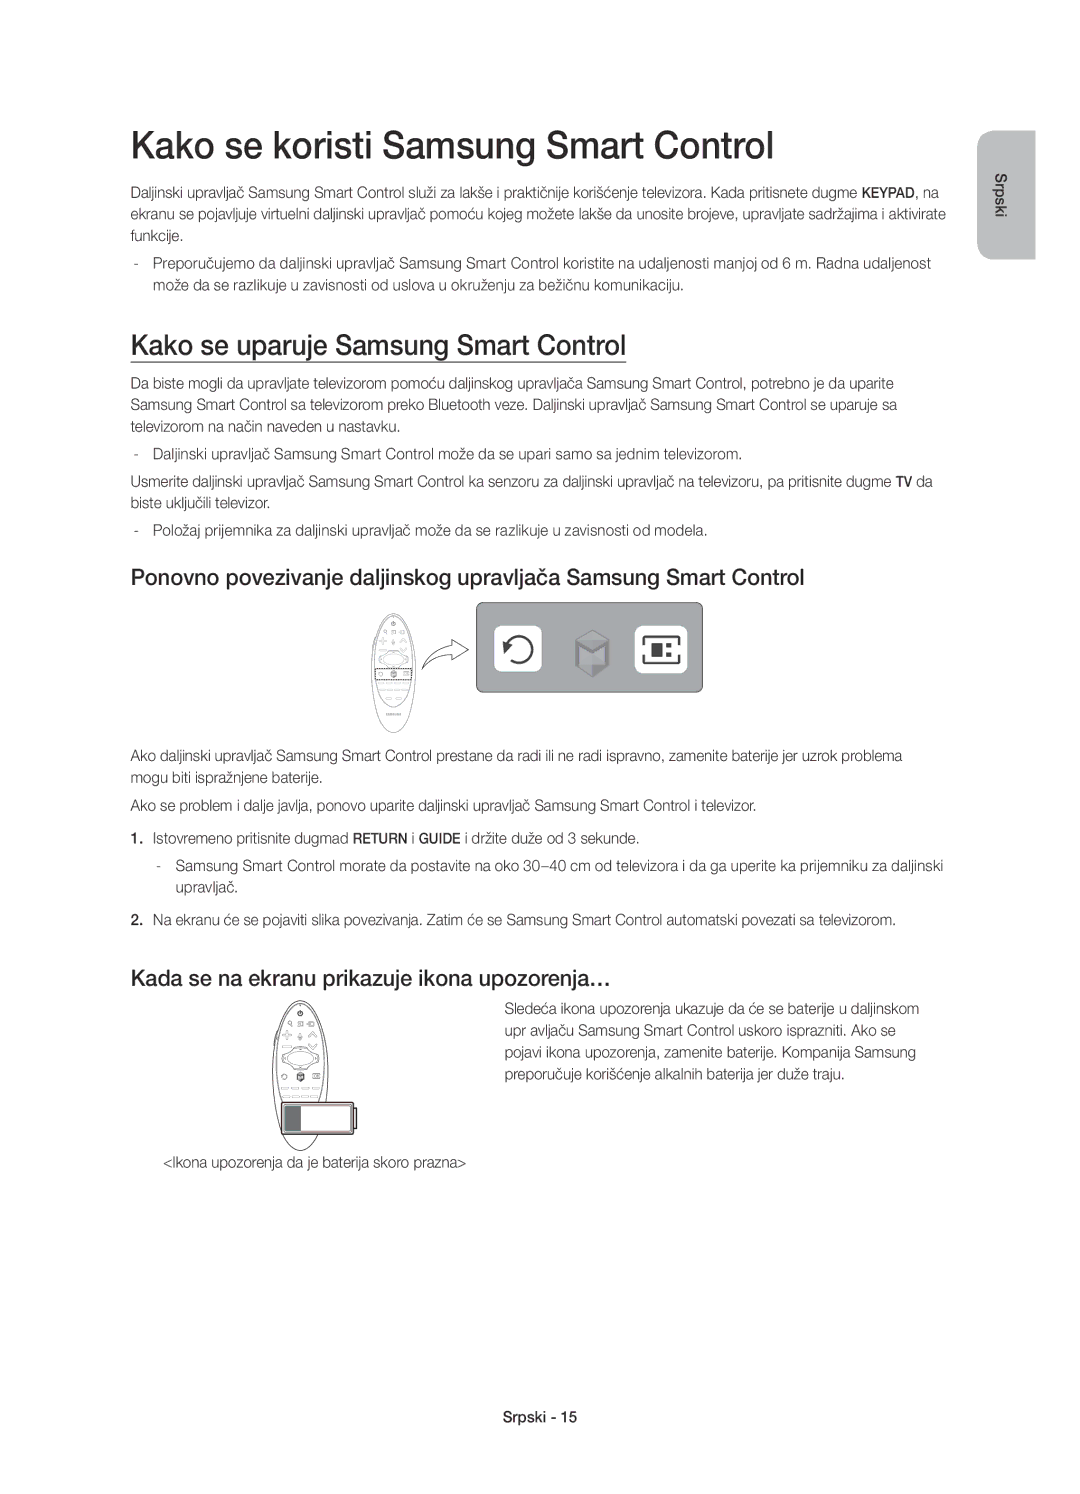 Samsung UE55HU7200SXXN, UE55HU7200SXZG manual Kako se koristi Samsung Smart Control, Kako se uparuje Samsung Smart Control 